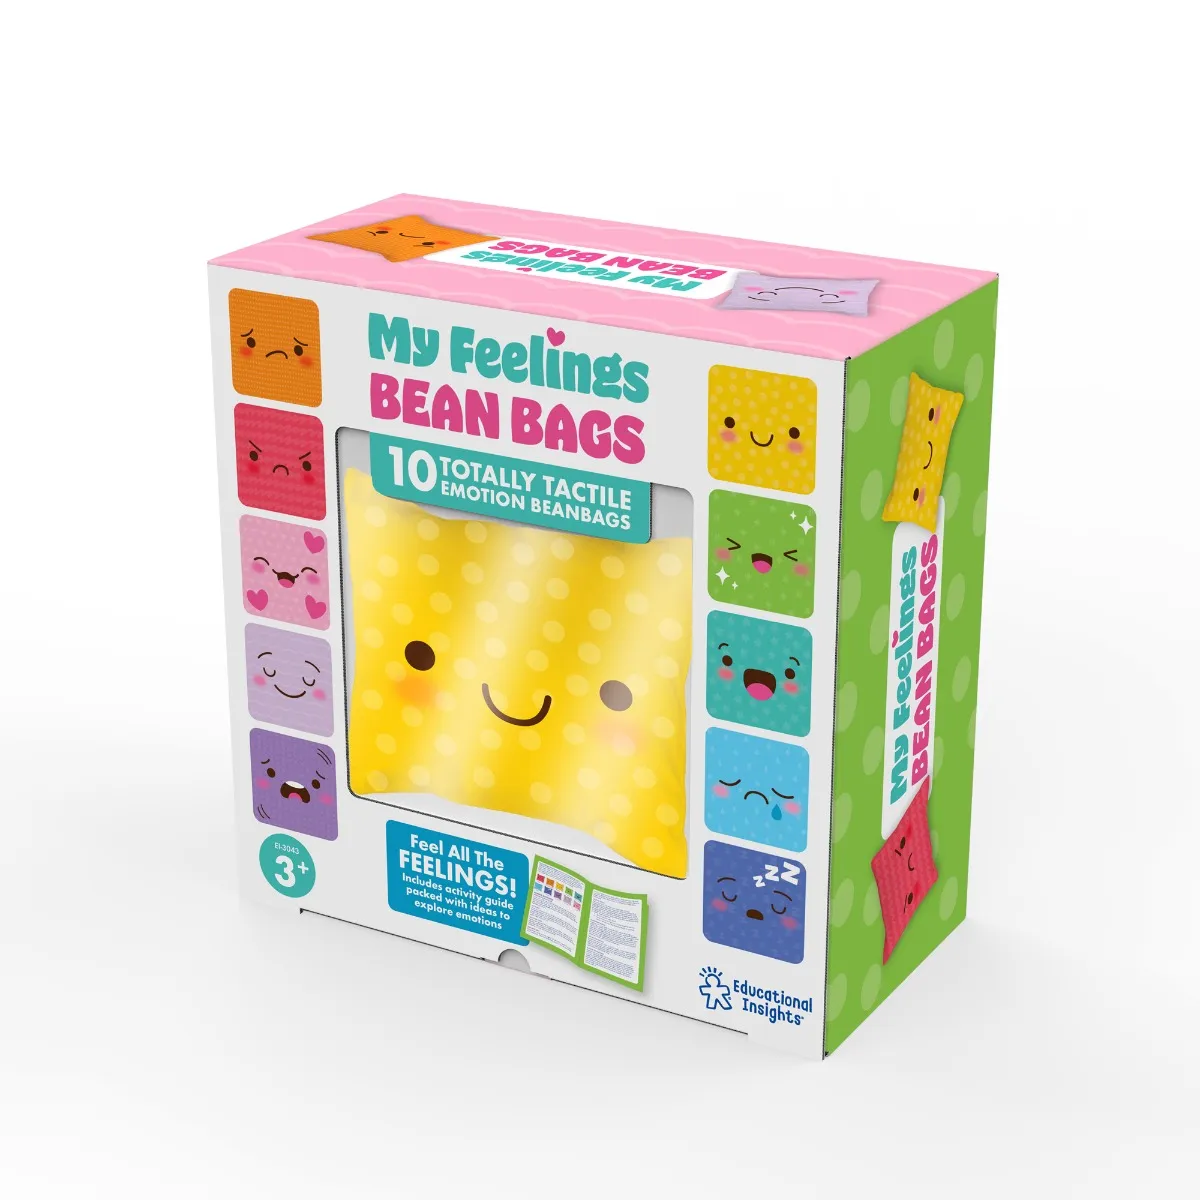 My Feelings Bean Bags - why,gr